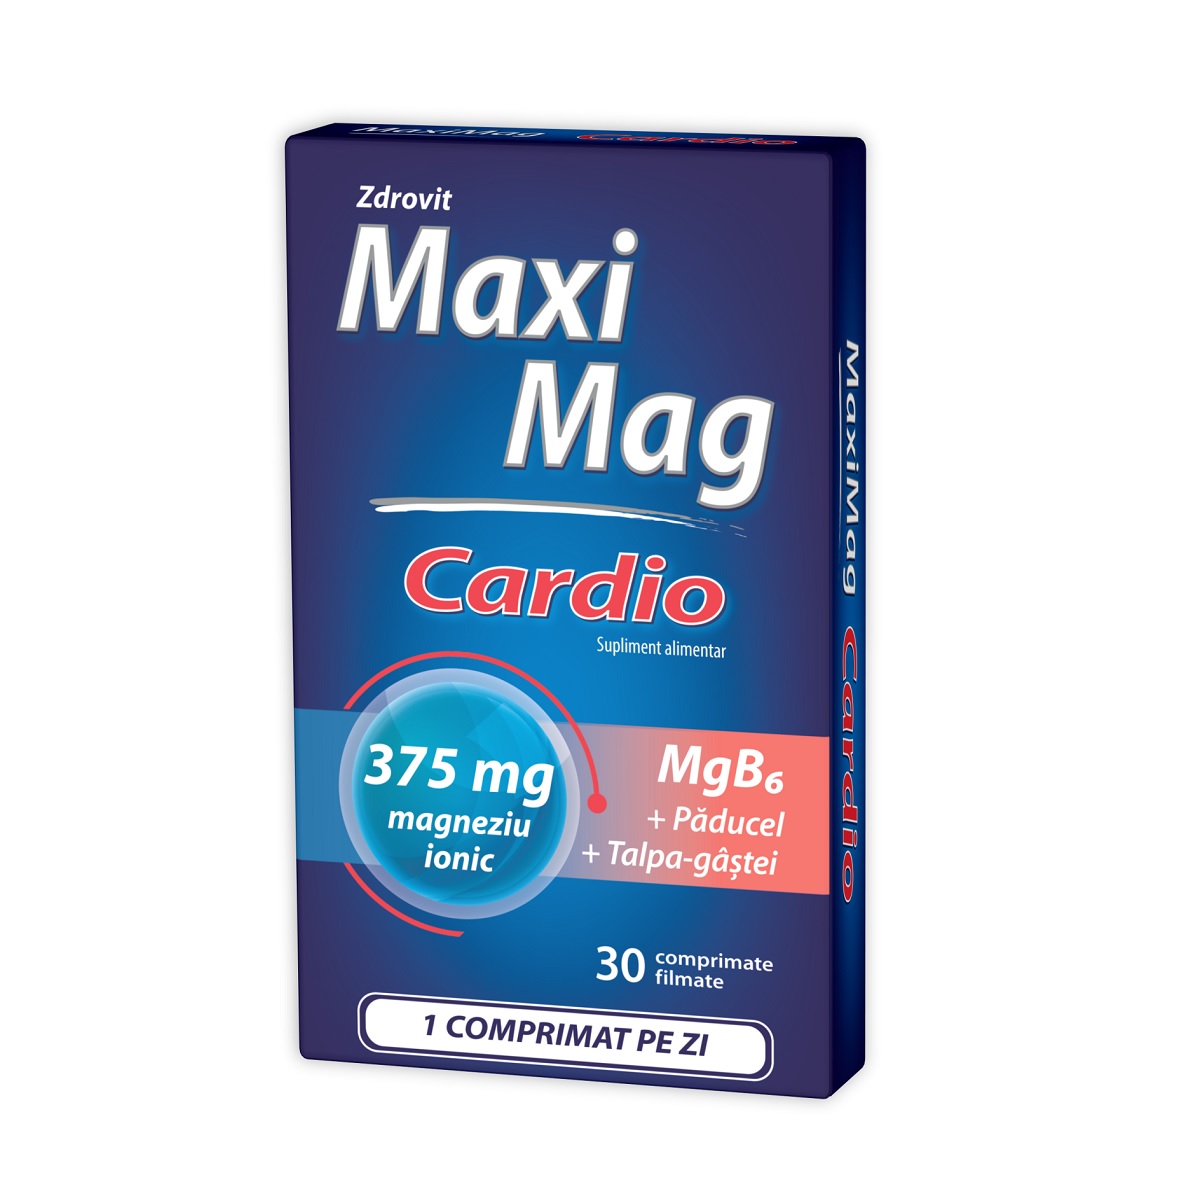 MAXIMAG CARDIO X 30 COMPRIMATE ZDROVIT